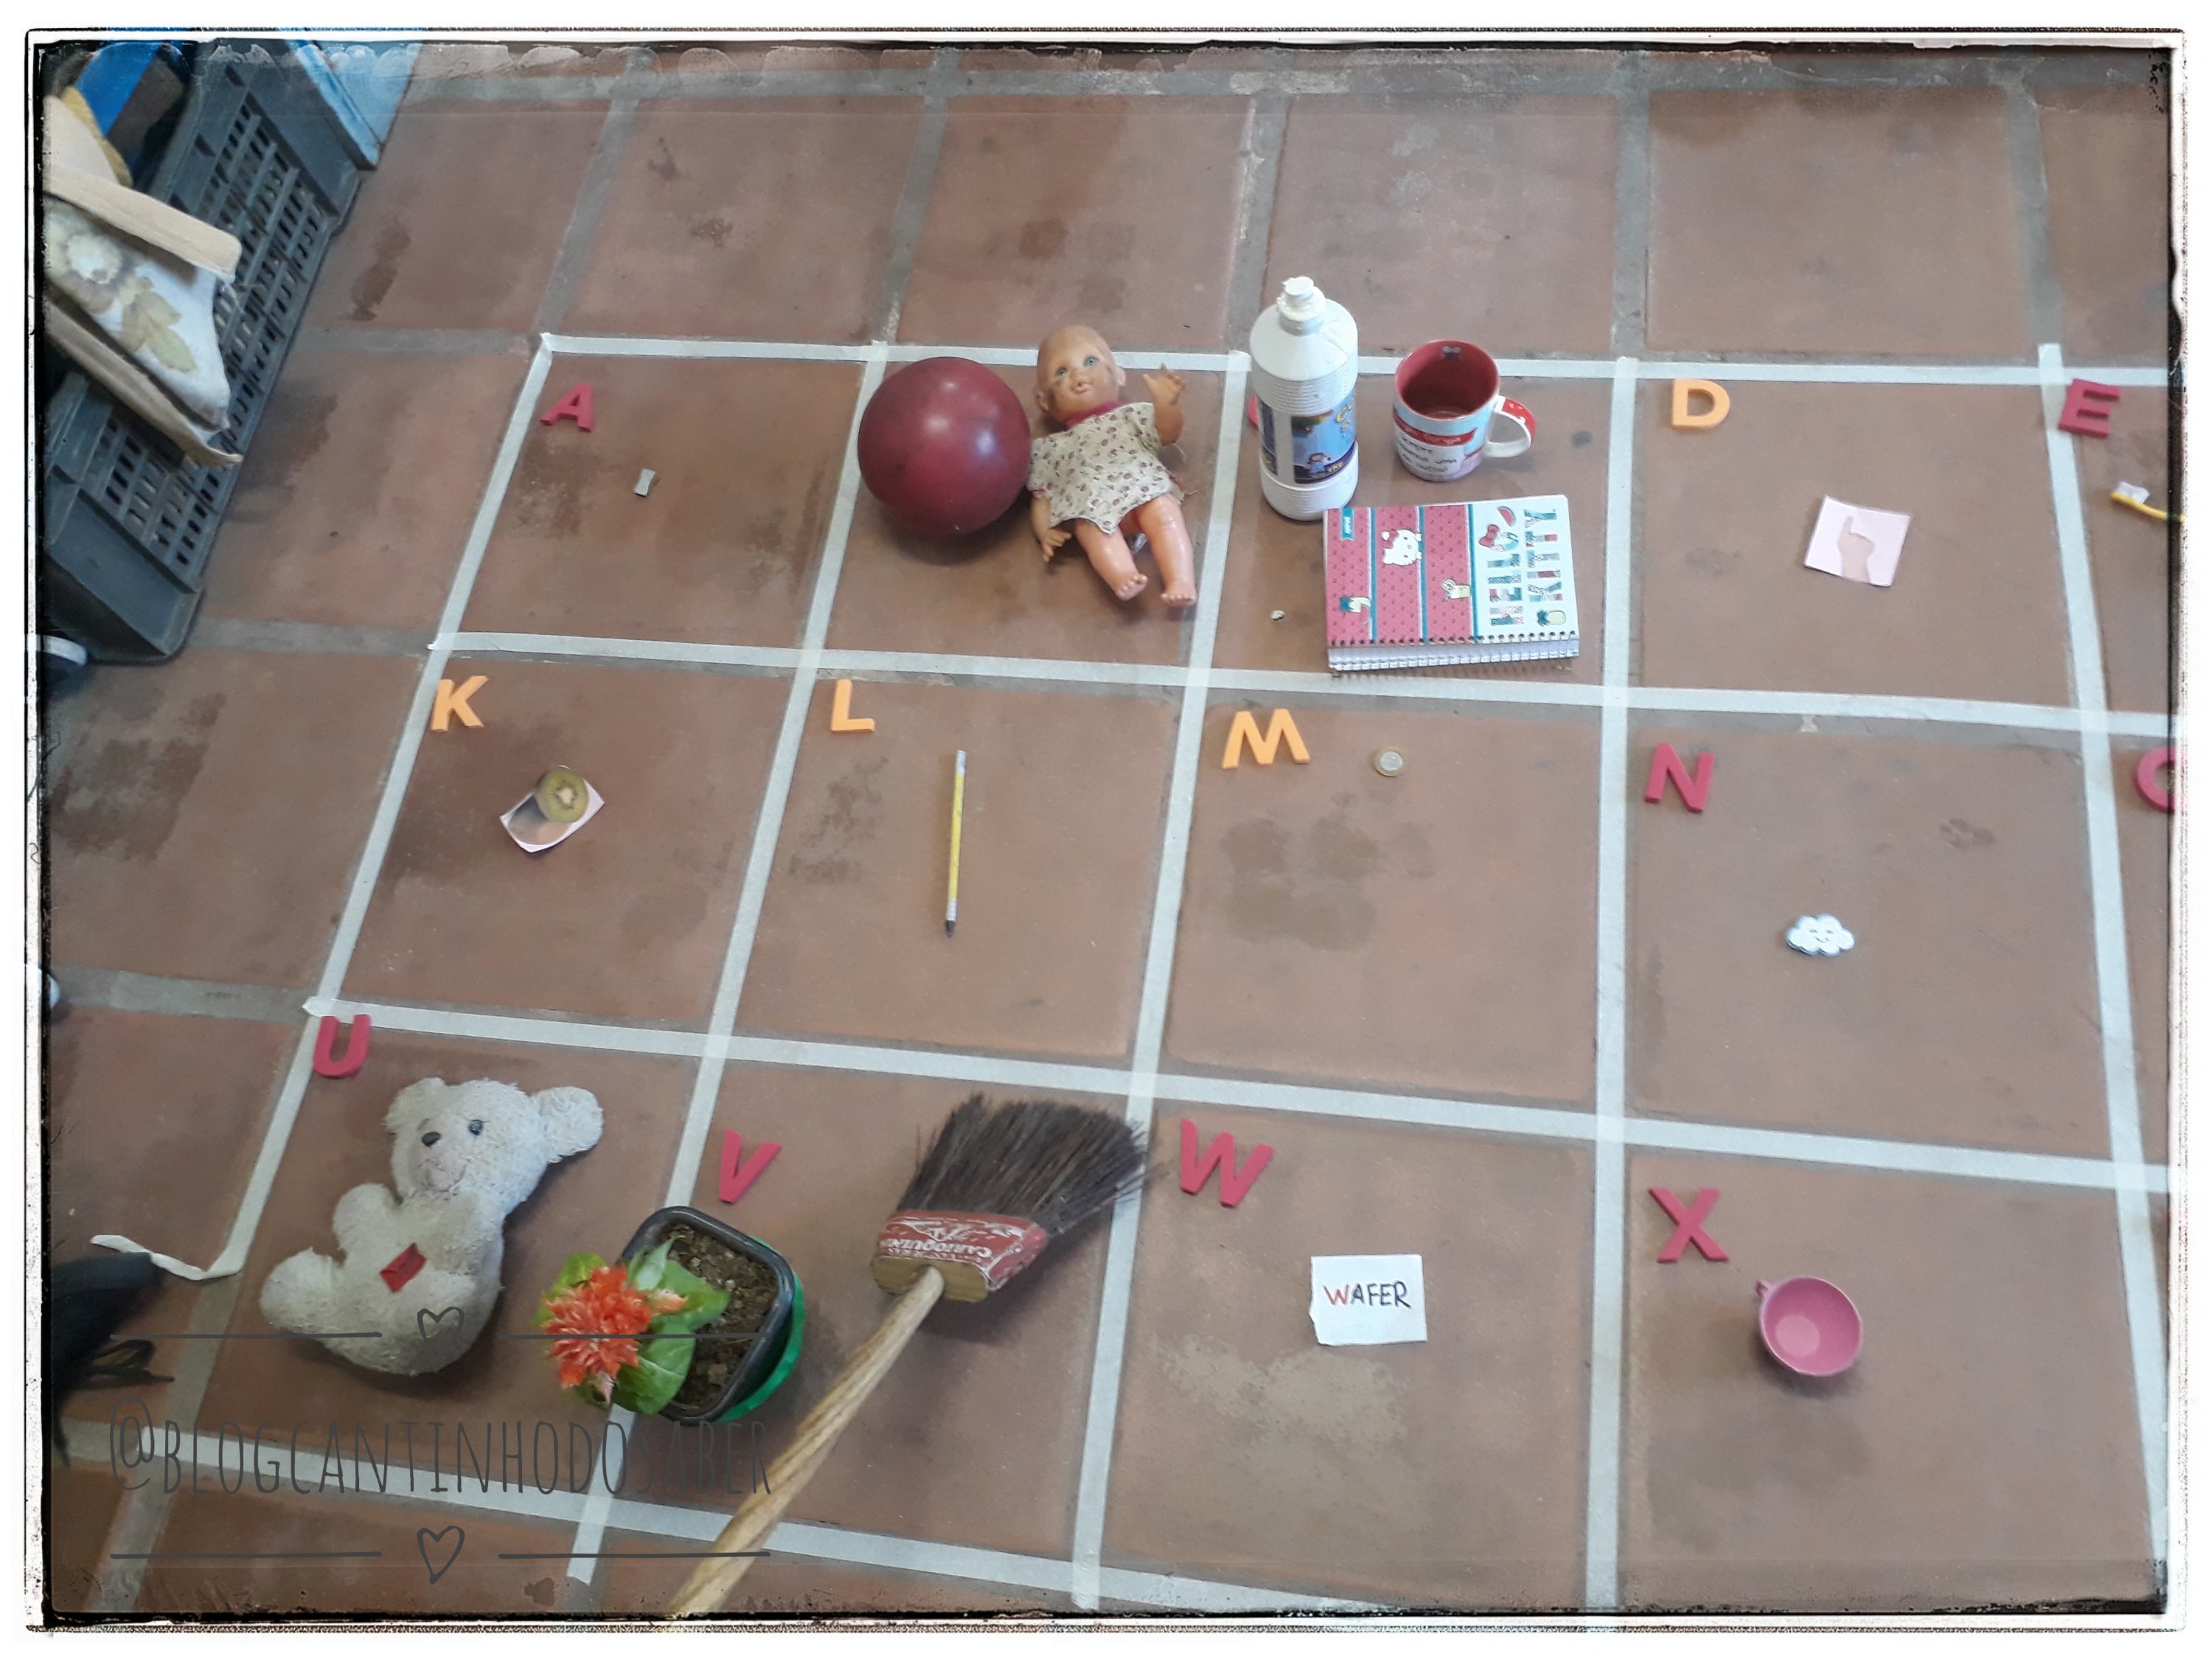 Jogo trilha do alfabeto - Atividades para a Educação Infantil - Cantinho do  Saber